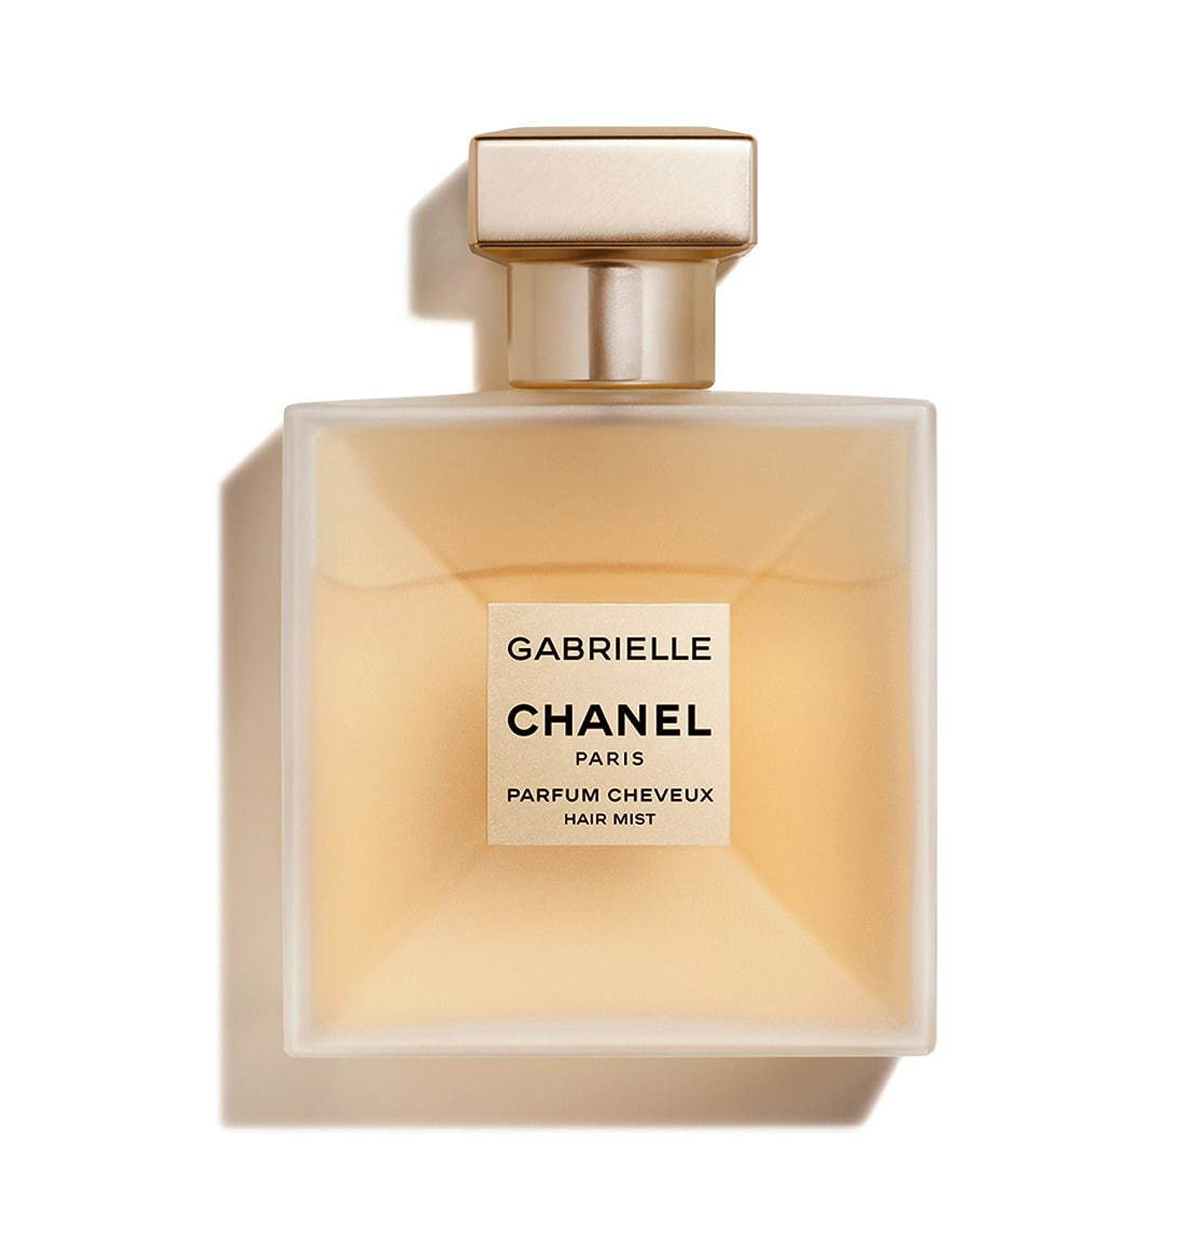 عطر شانيل للشعر Chanel الرائع عطورنا